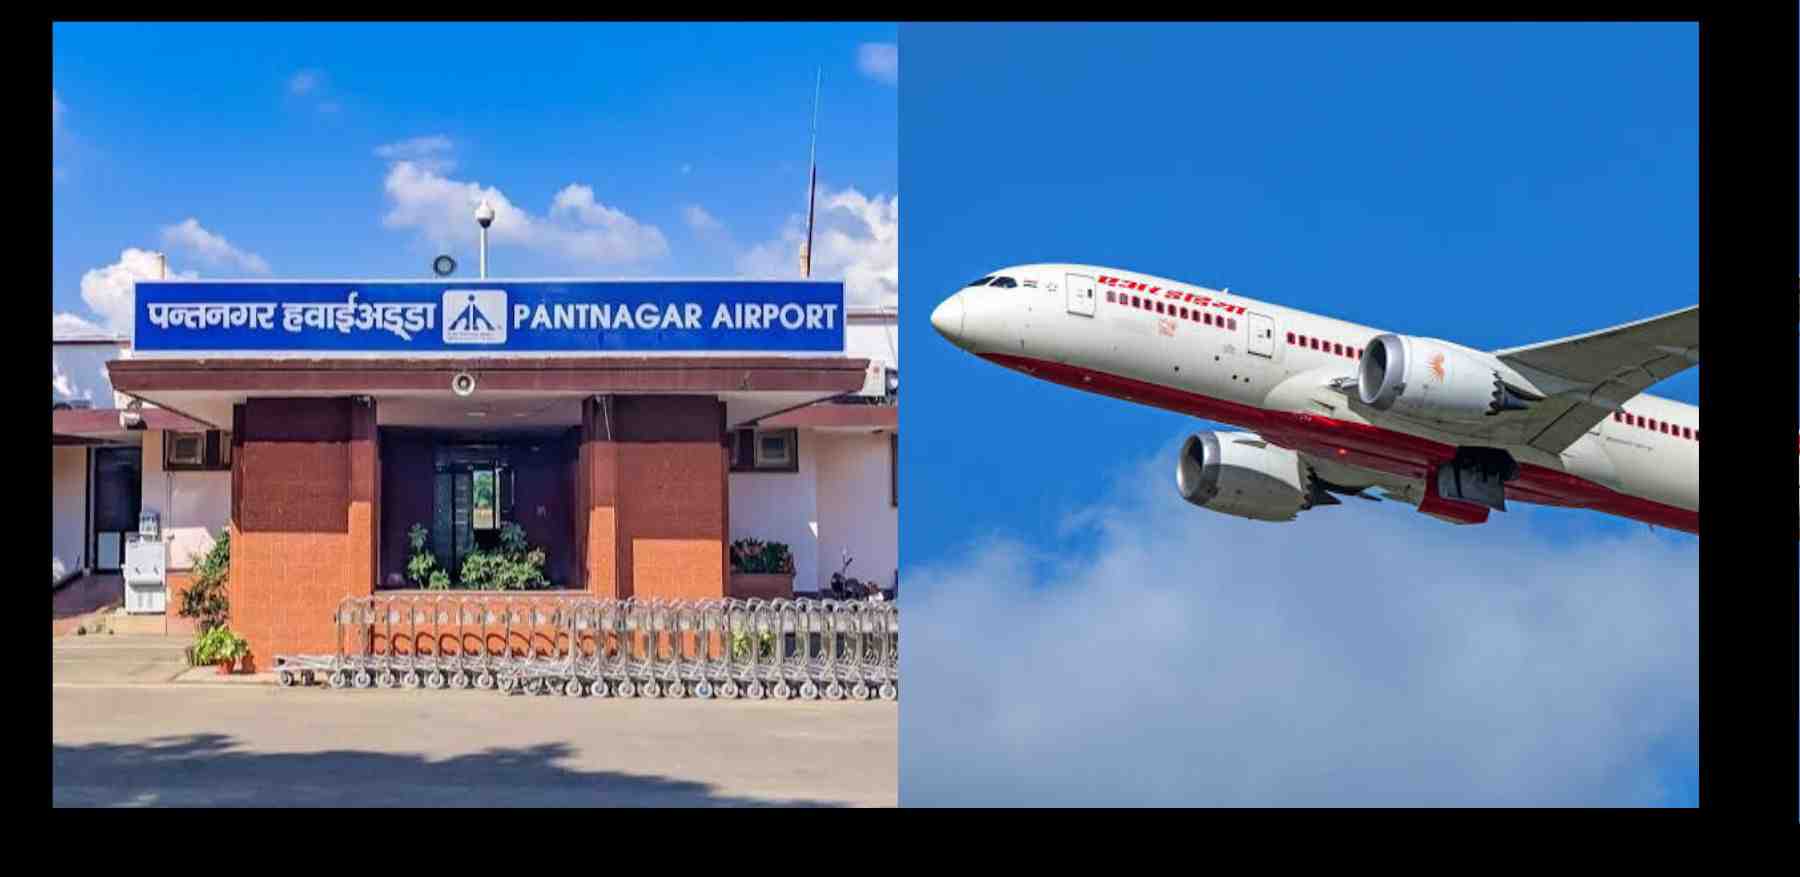 Uttarakhand News: Pantnagar Airport gets international airport approval from the Center. Pantnagar international airport